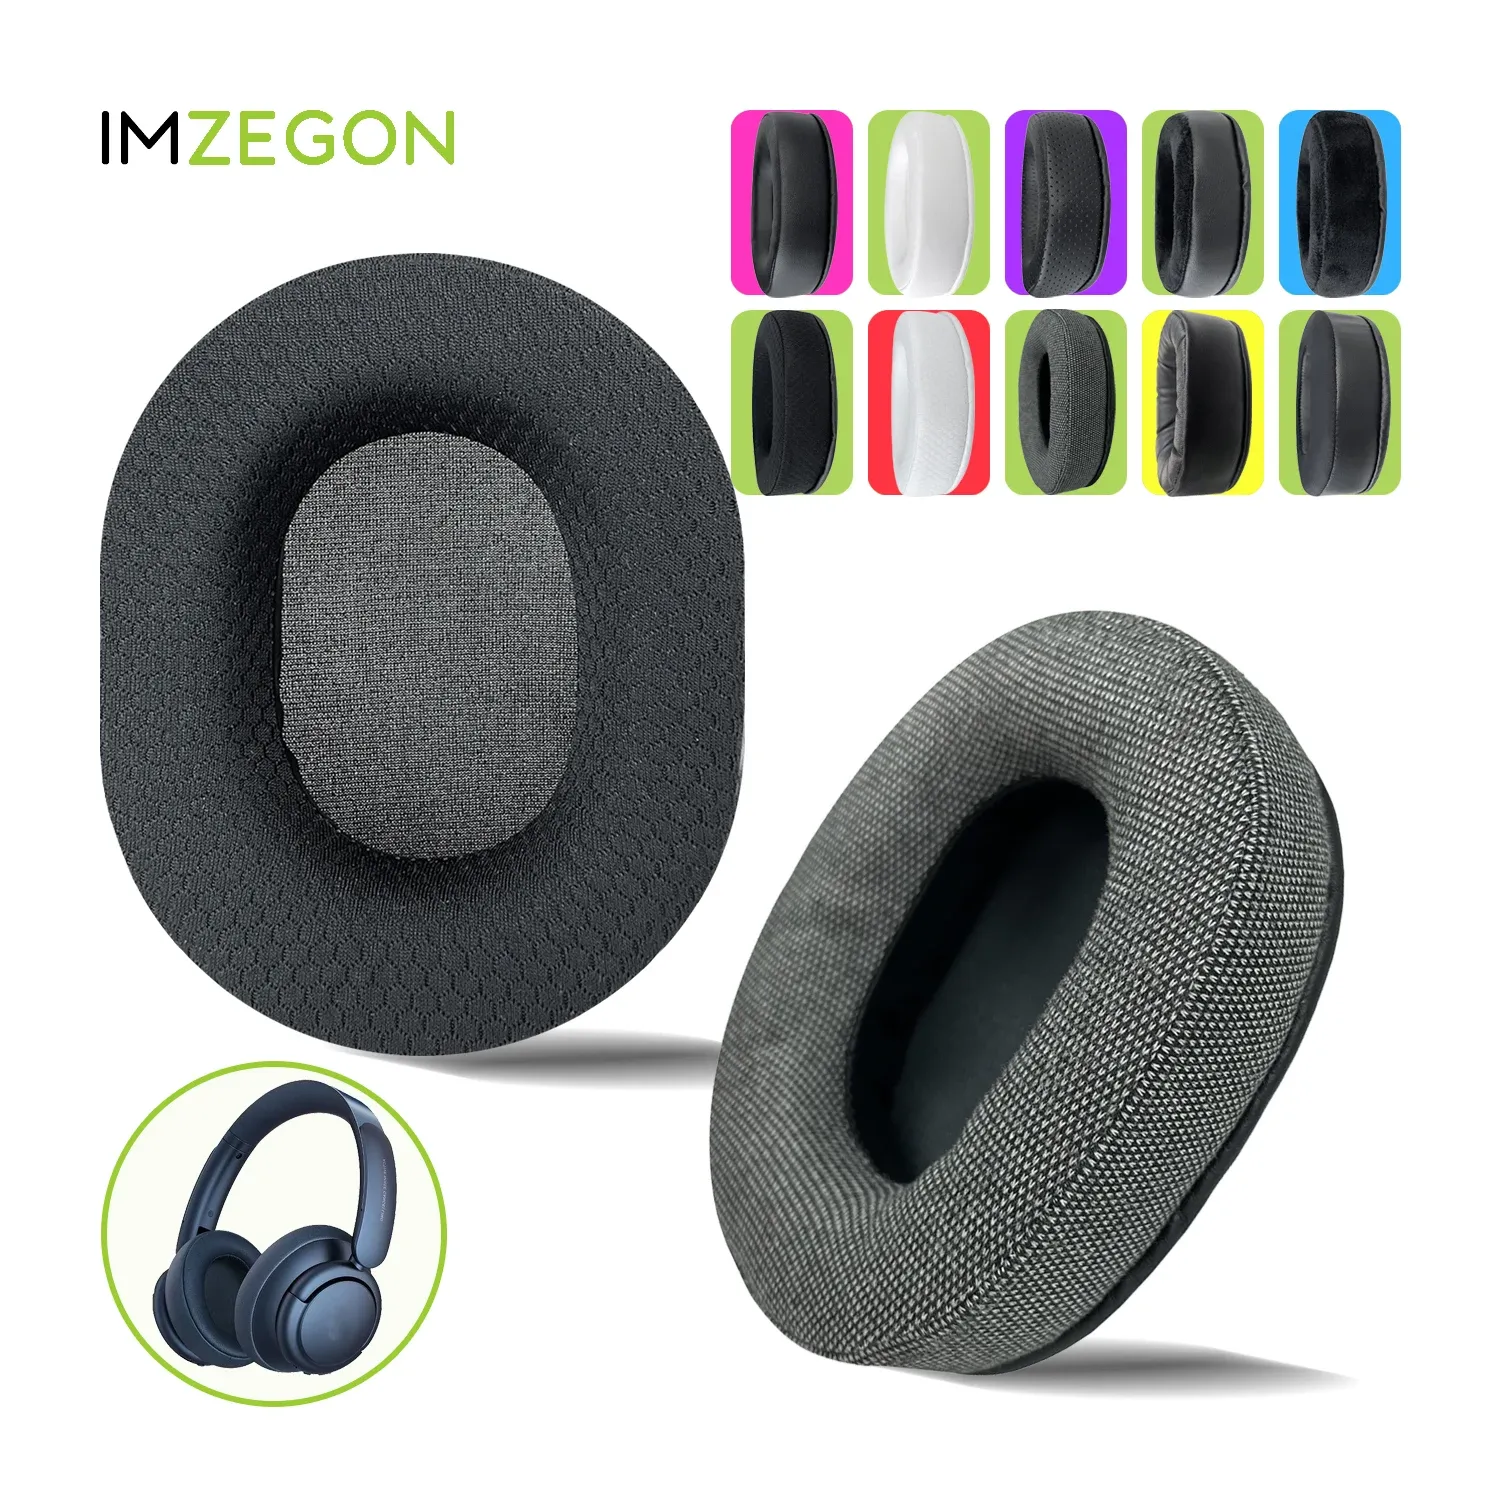 Acessórios IMZEGON Substituição Earpads Headband para Anker Soundcore Life Q30, Q35, Q10, Q20 Fones de ouvido Almofada de orelha Manga Capa Protetores de ouvido